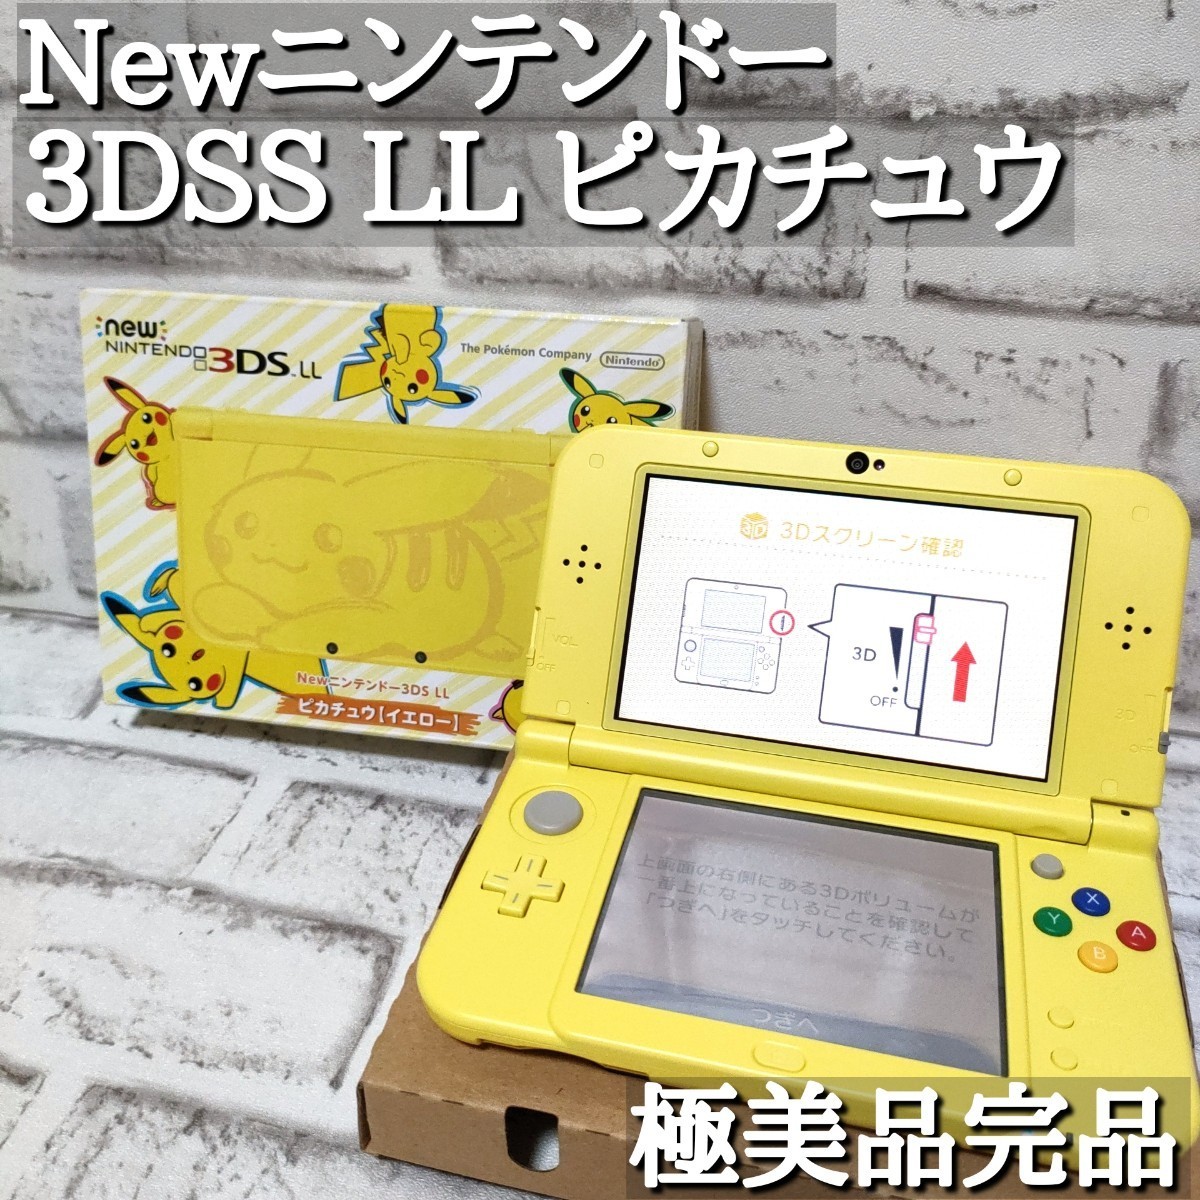 ほぼ新品 モデル Newニンテンドー 3DS LL ピカチュウ イエロー 廃盤